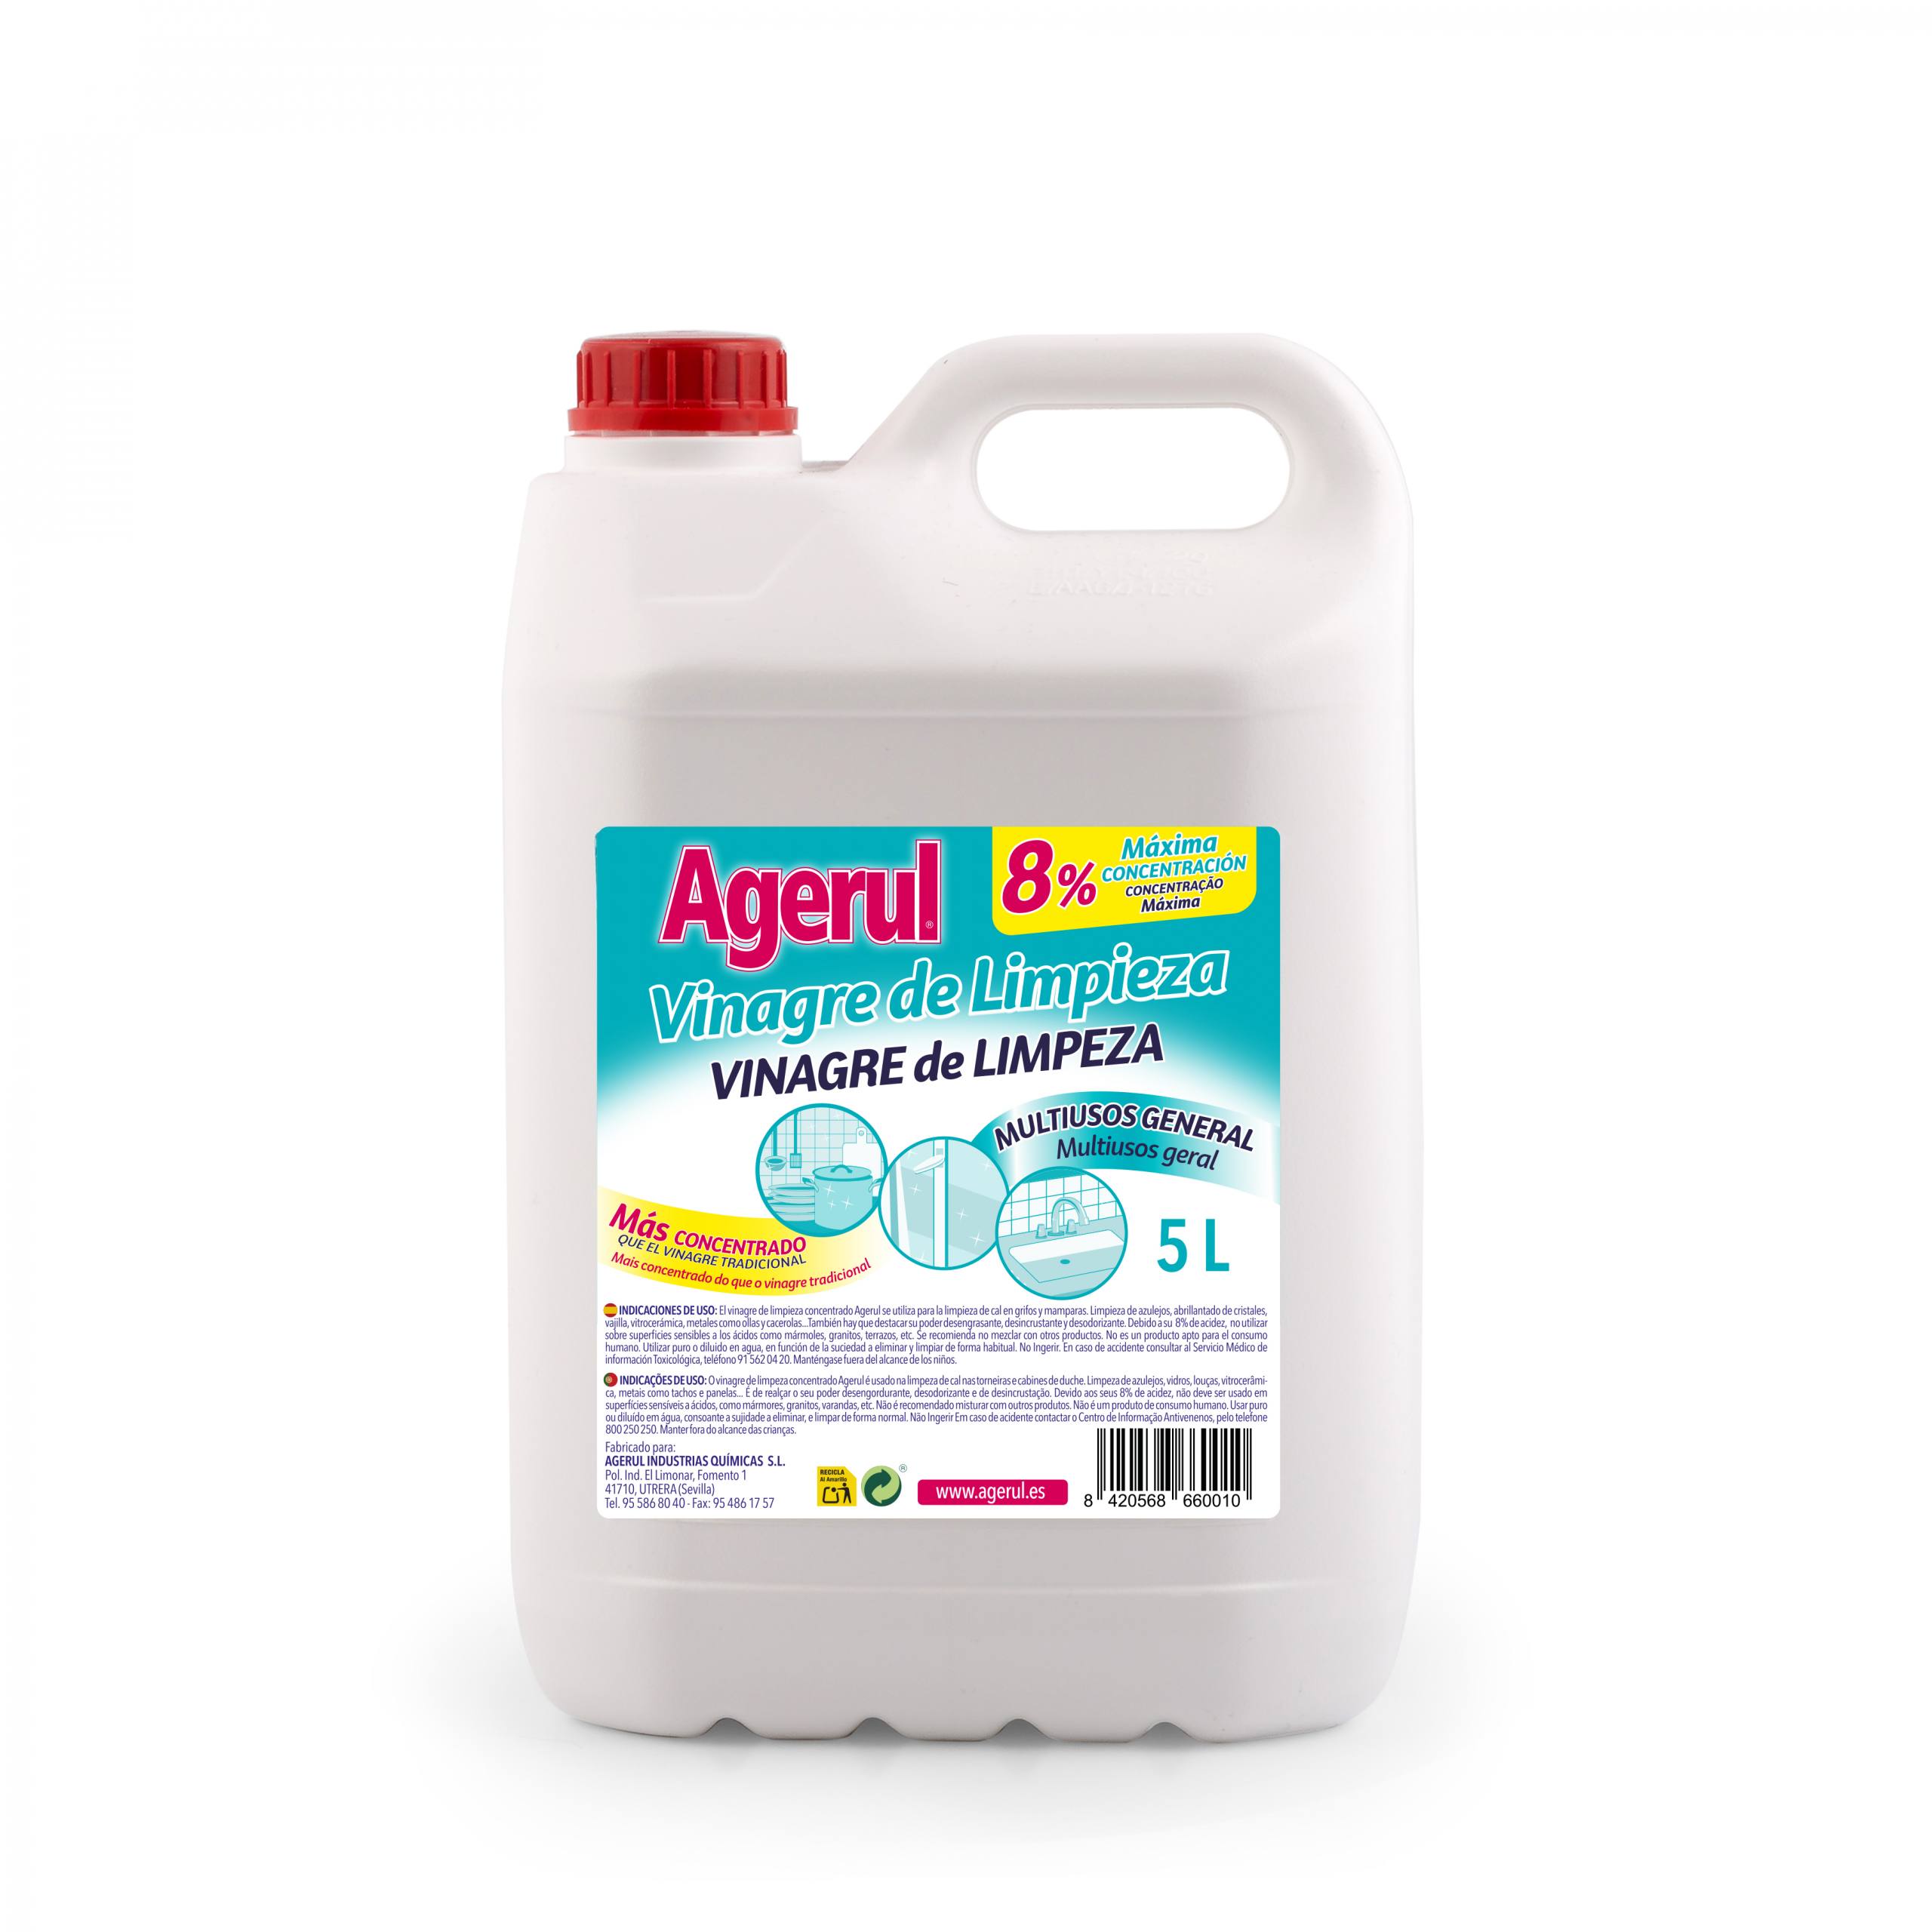 Vinagre de limpieza concentrado Agerul - Multiusos muy económico